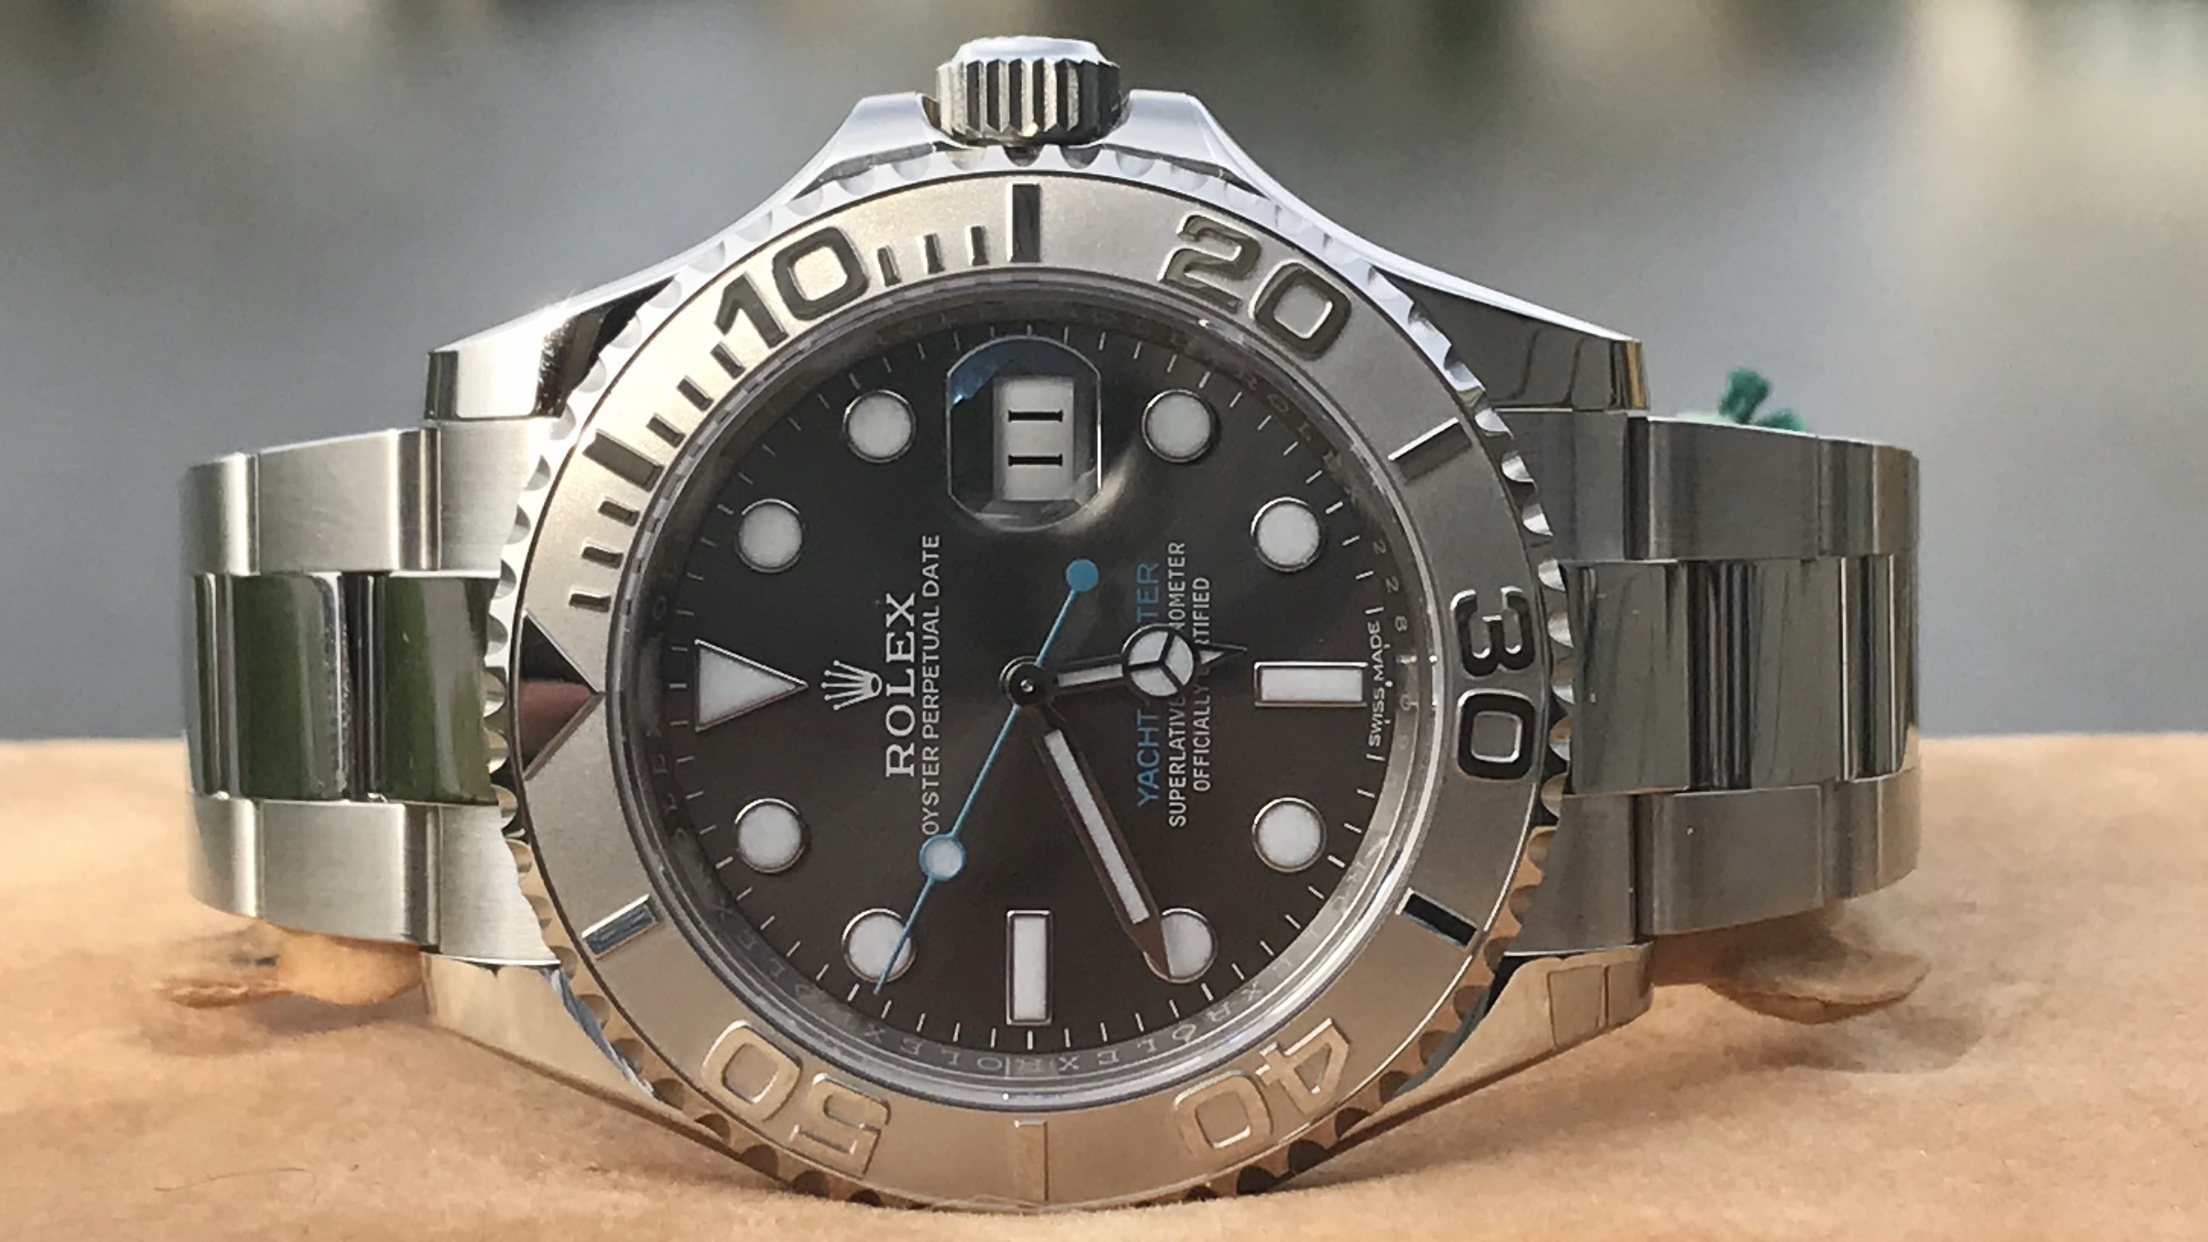 Rolex 126622 Yachtmaster Dark Rhodium Dial Watch
